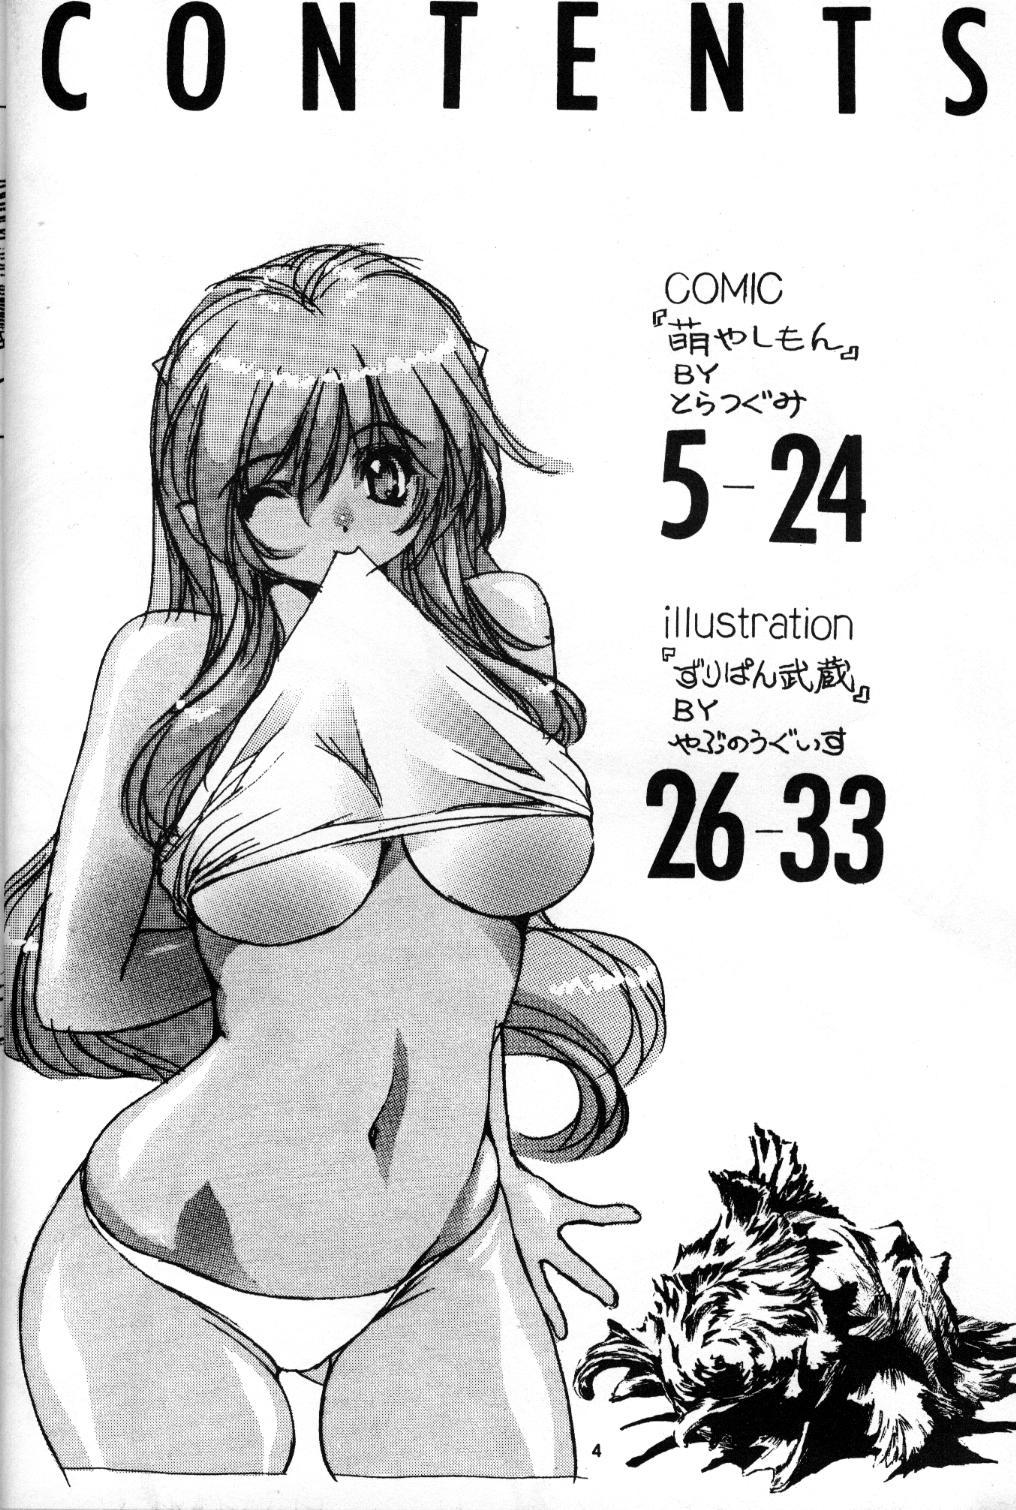 Soft Naked Dream Lunatic Volume 1 - Urusei yatsura Brazzers - Page 3